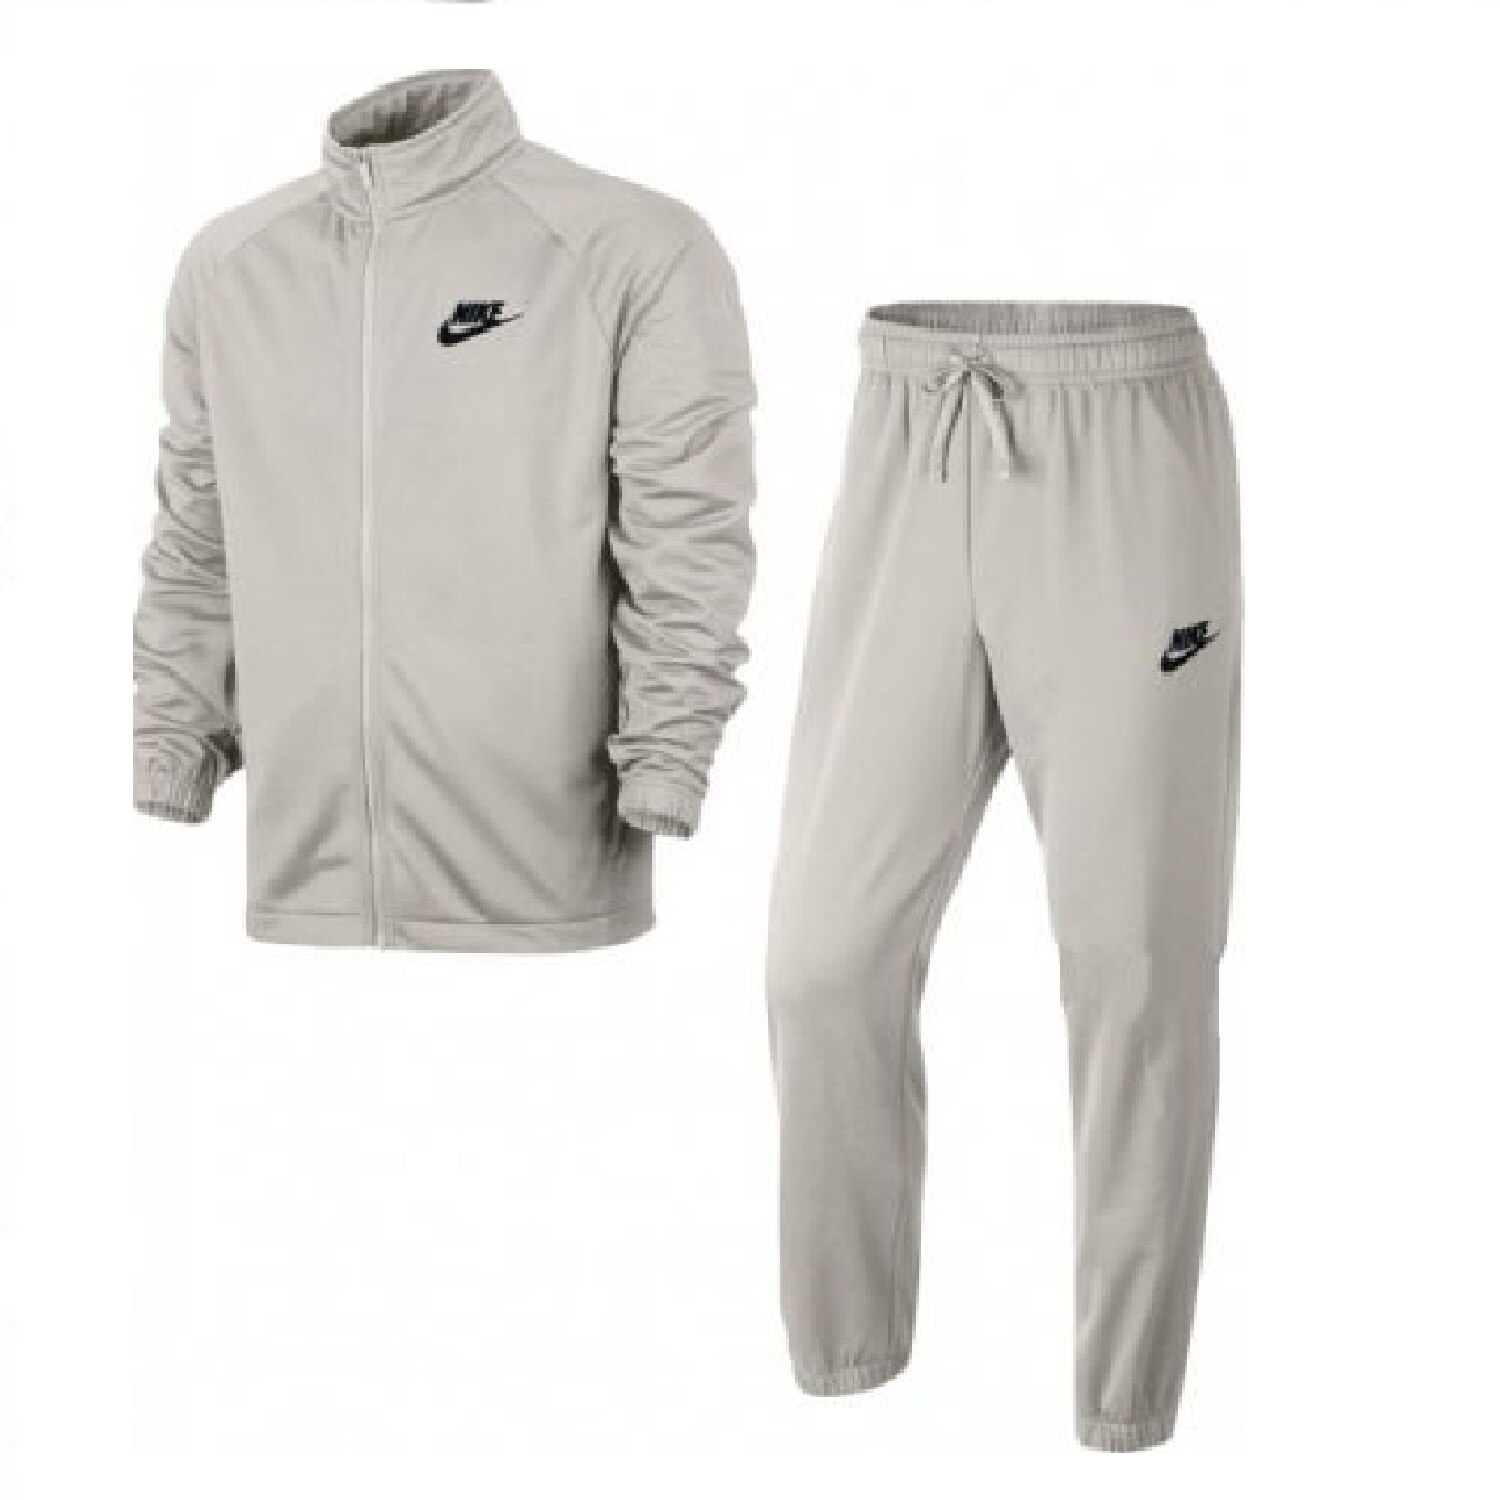 Спортивный костюм m. Спортивный костюм Nike Tracksuit. Nike Tracksuit Basic. Nike Sportswear Basic костюм. Костюм найк мужской Sportswear.